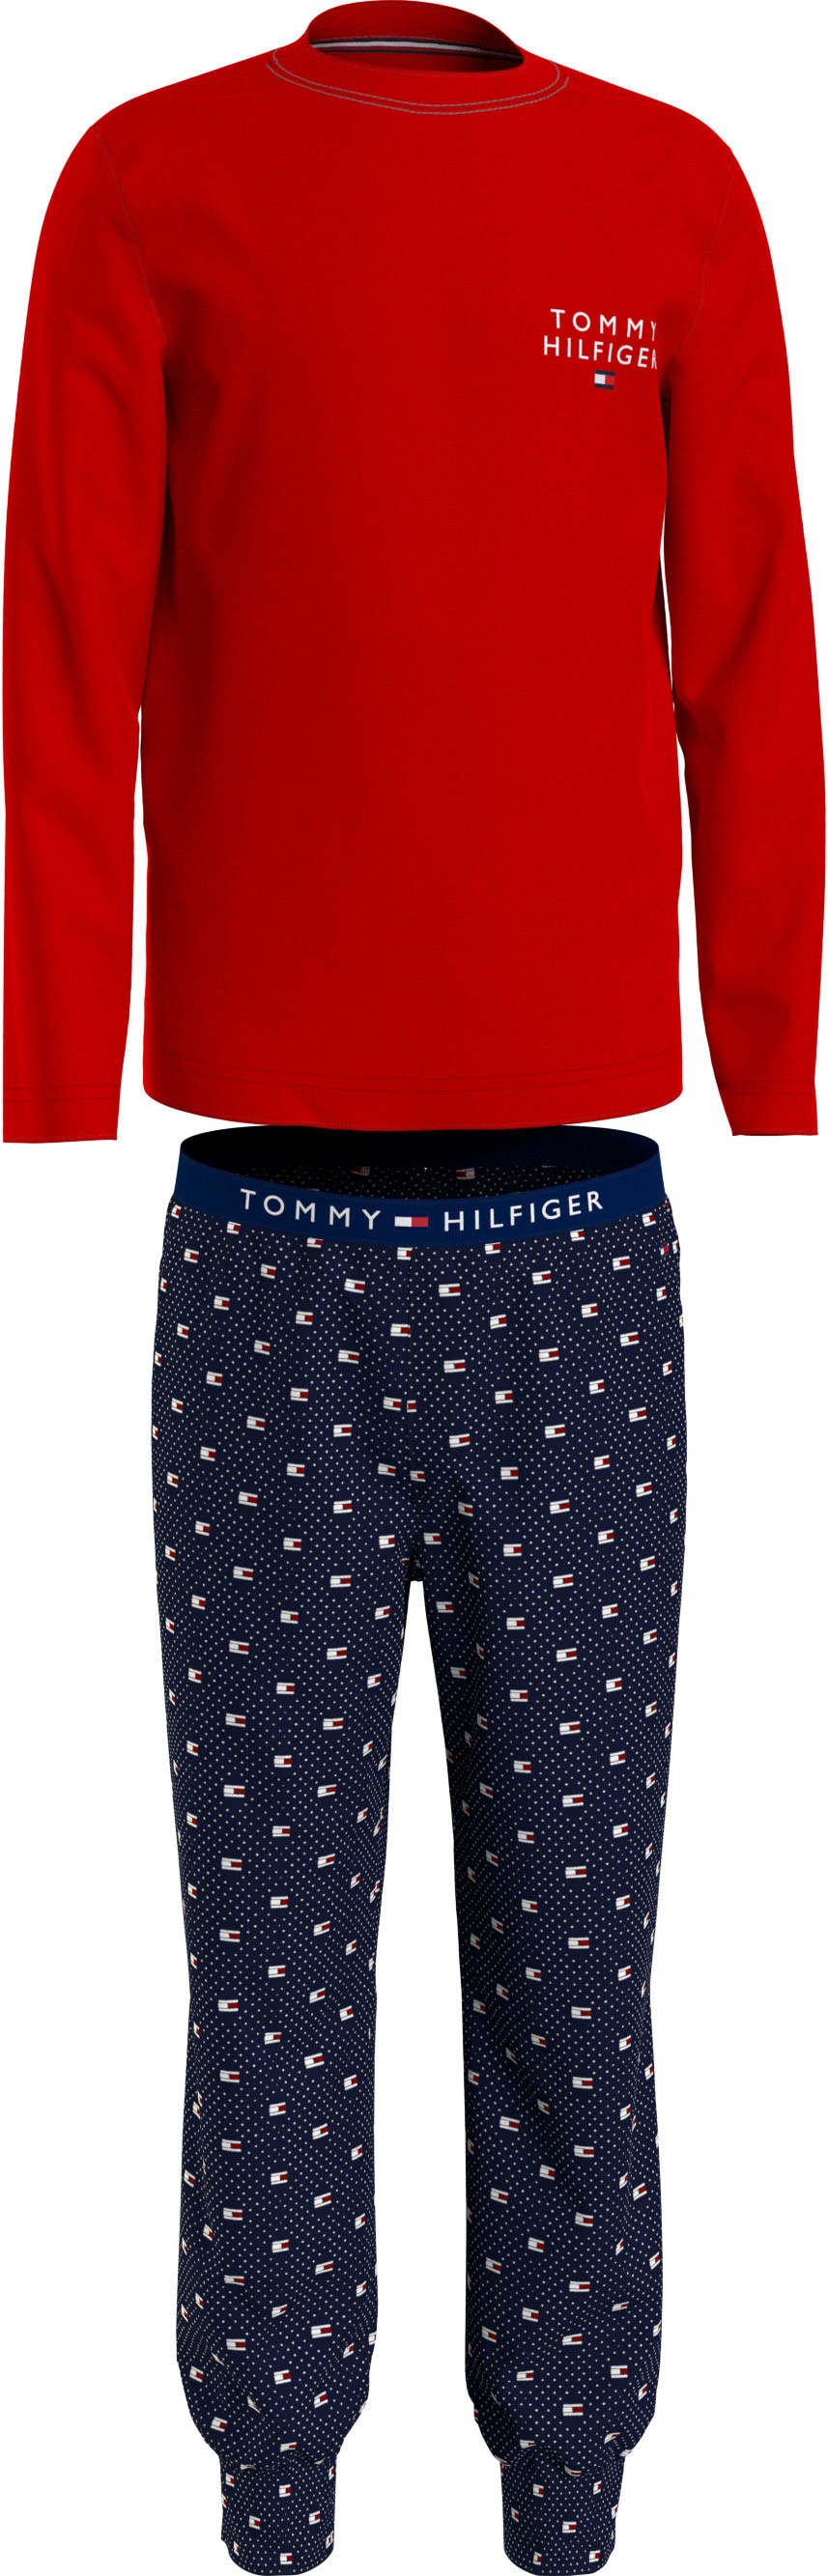 Tommy Hilfiger Underwear Schlafanzug »LS LONG PANTS PJ SET PRINT«, (2 tlg.),  mit Tommy Hilfiger Branding online bei